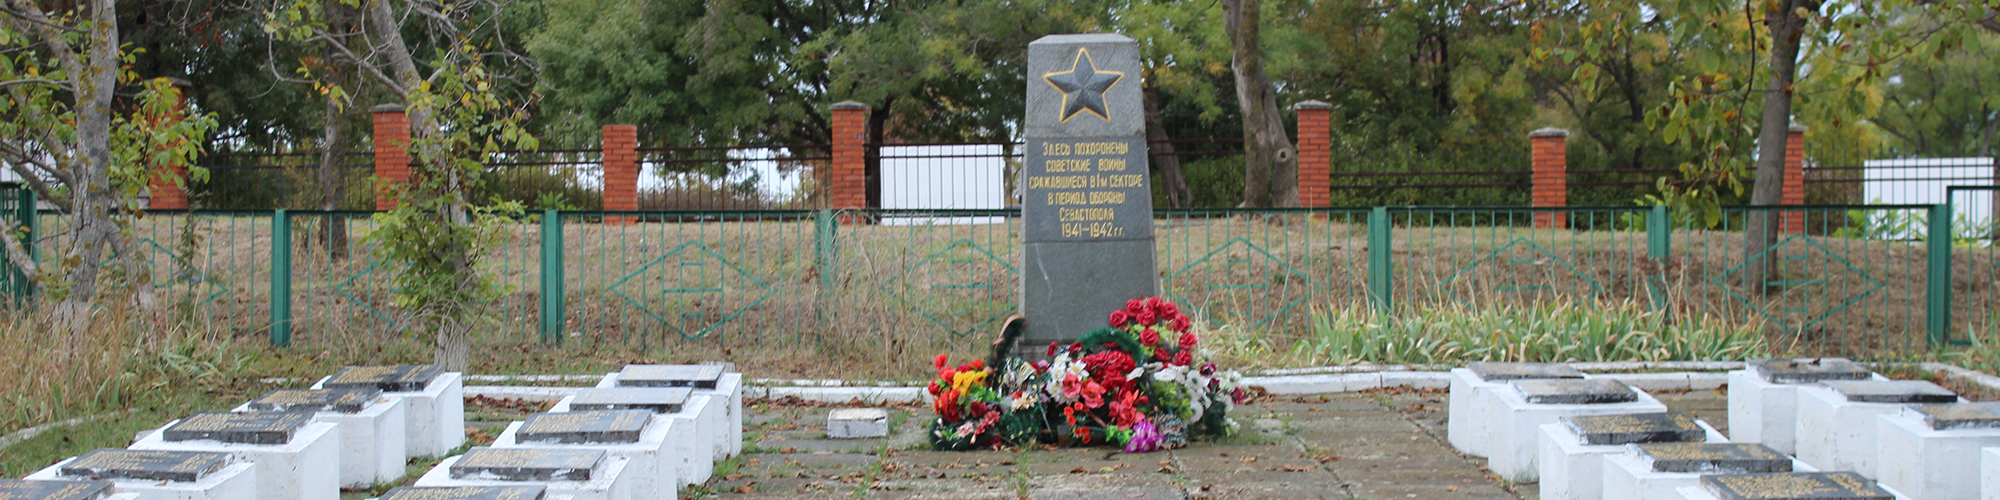 Братская могила 1 сектор обороны, 1941-42 (Севастополь)